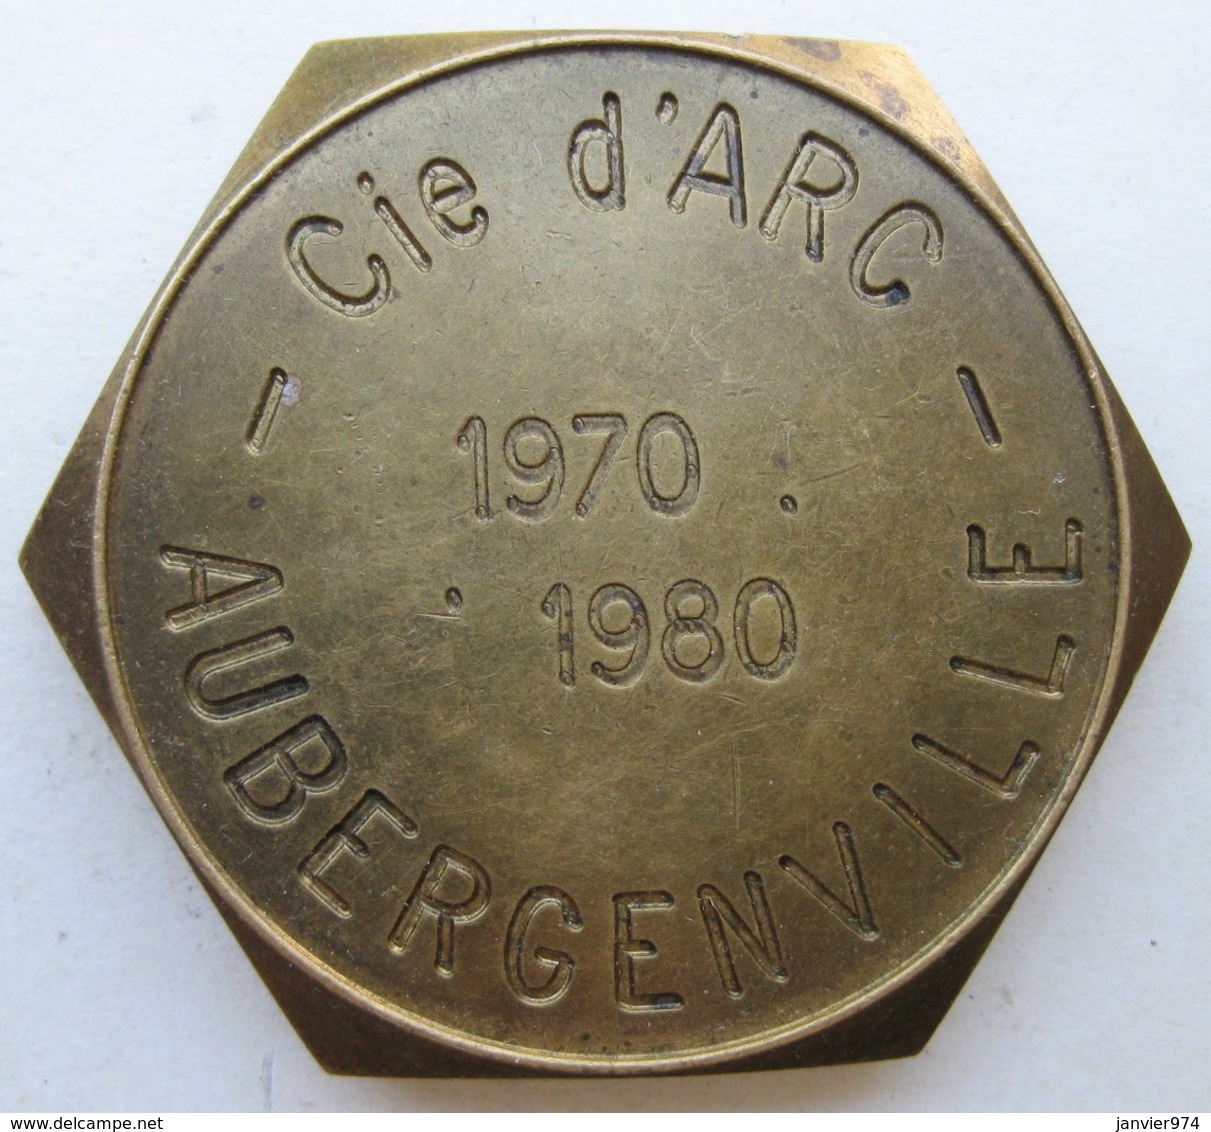 Medaille Compagnie D'Arc D'Aubergenville Yvelines Tic à L’Arc , 10 Anniversaires 1970 1980 - Professionnels / De Société